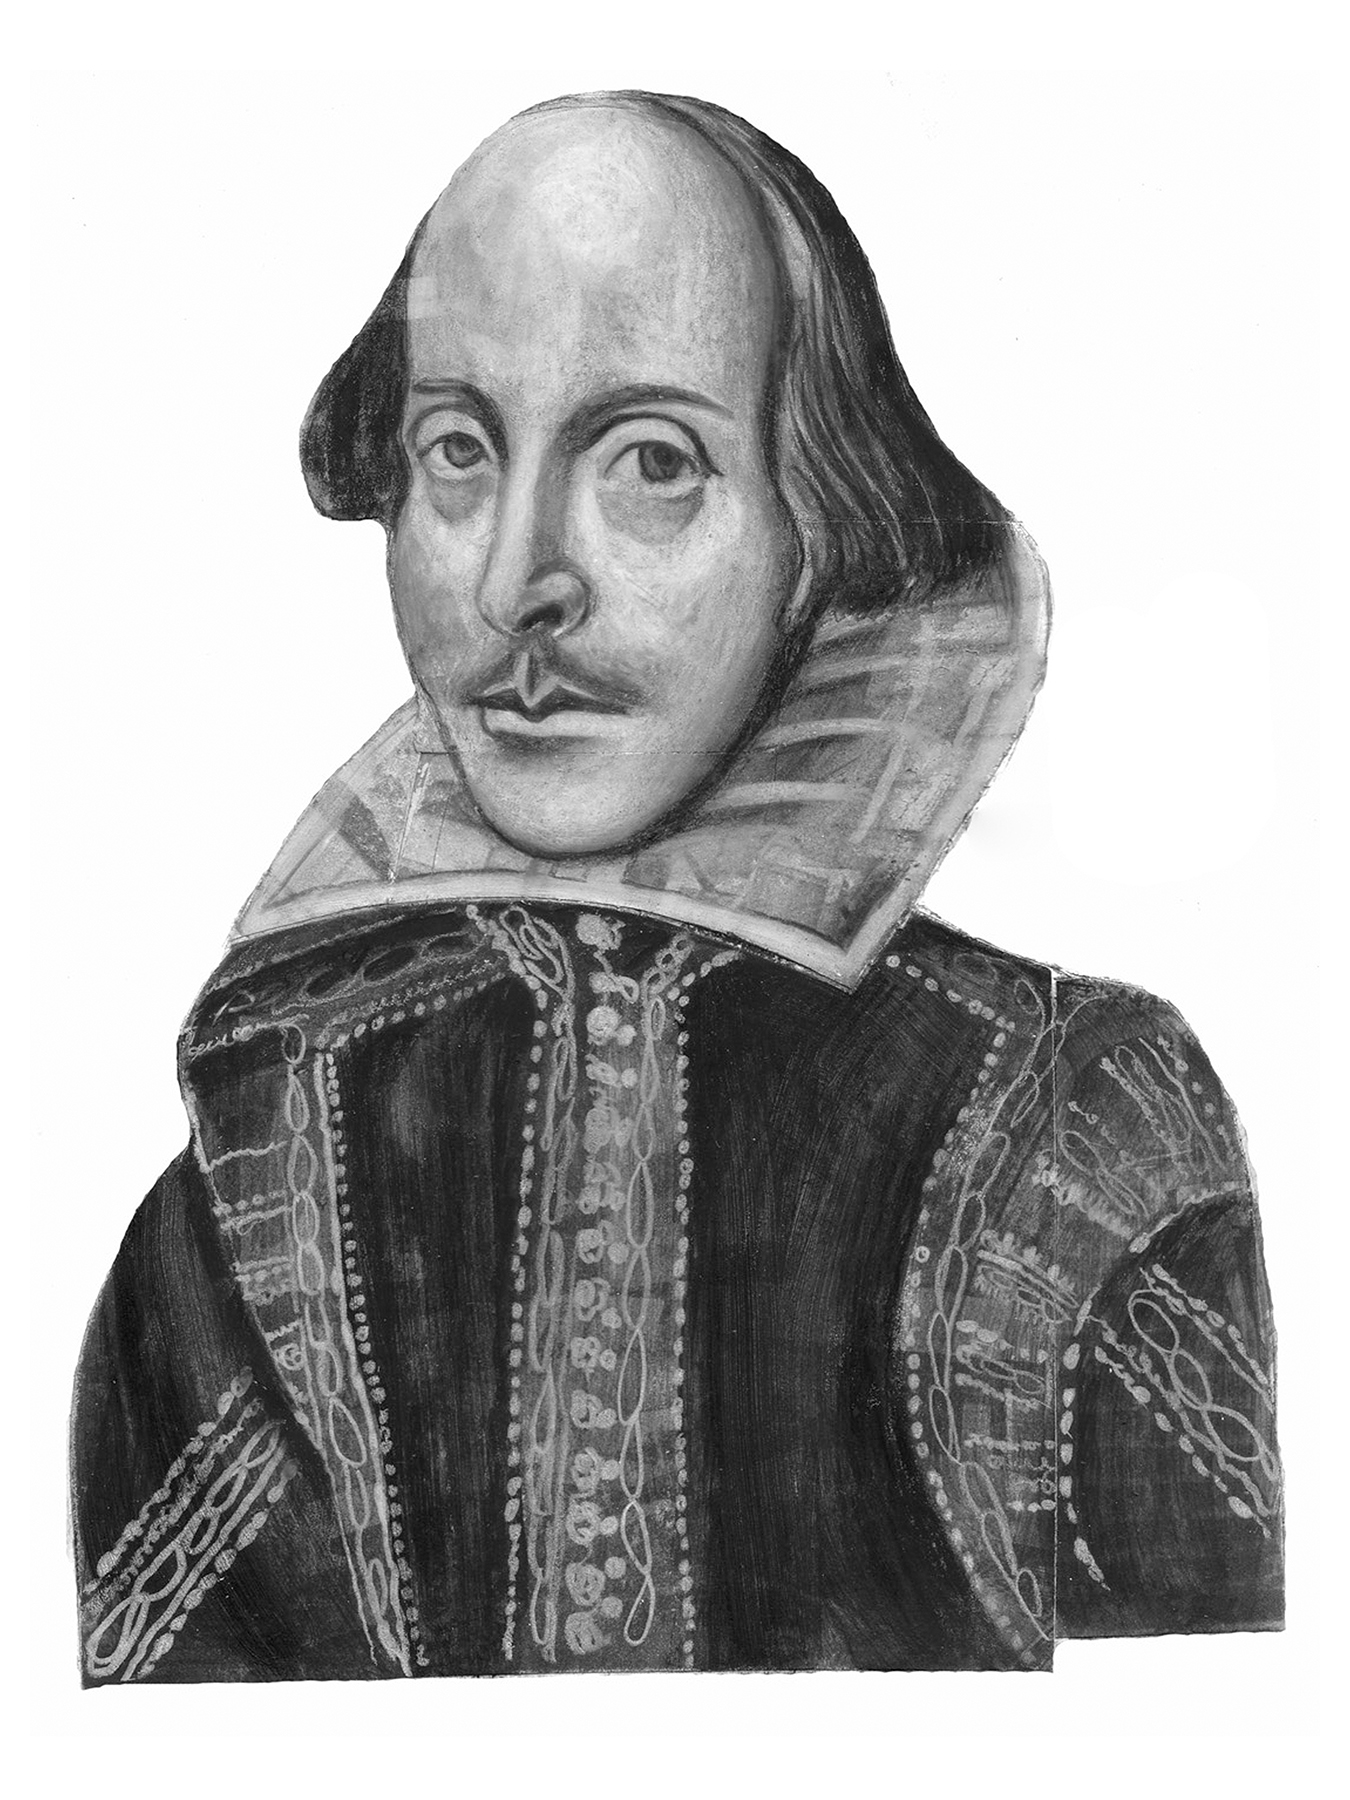  William Shakespeare / Chicago Tribune 